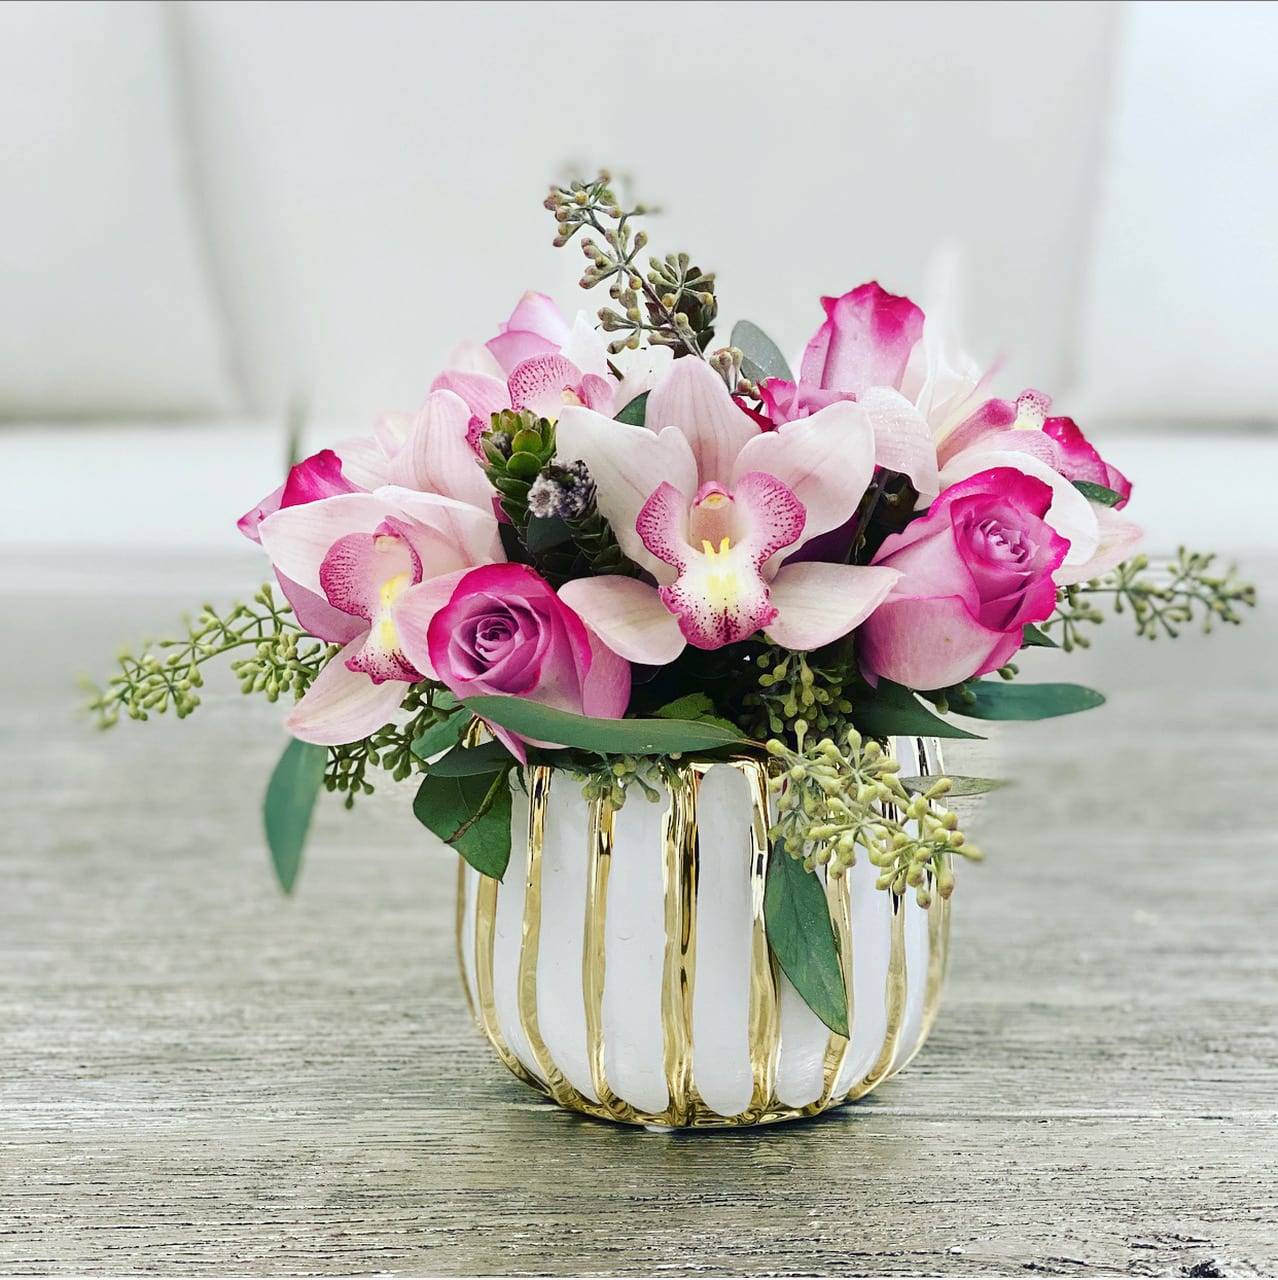 Sugar Plum Princess  - Gorgeous arrangement of Roses, Cymbidium orchids and Eucalyptus in a unique ceramic vase